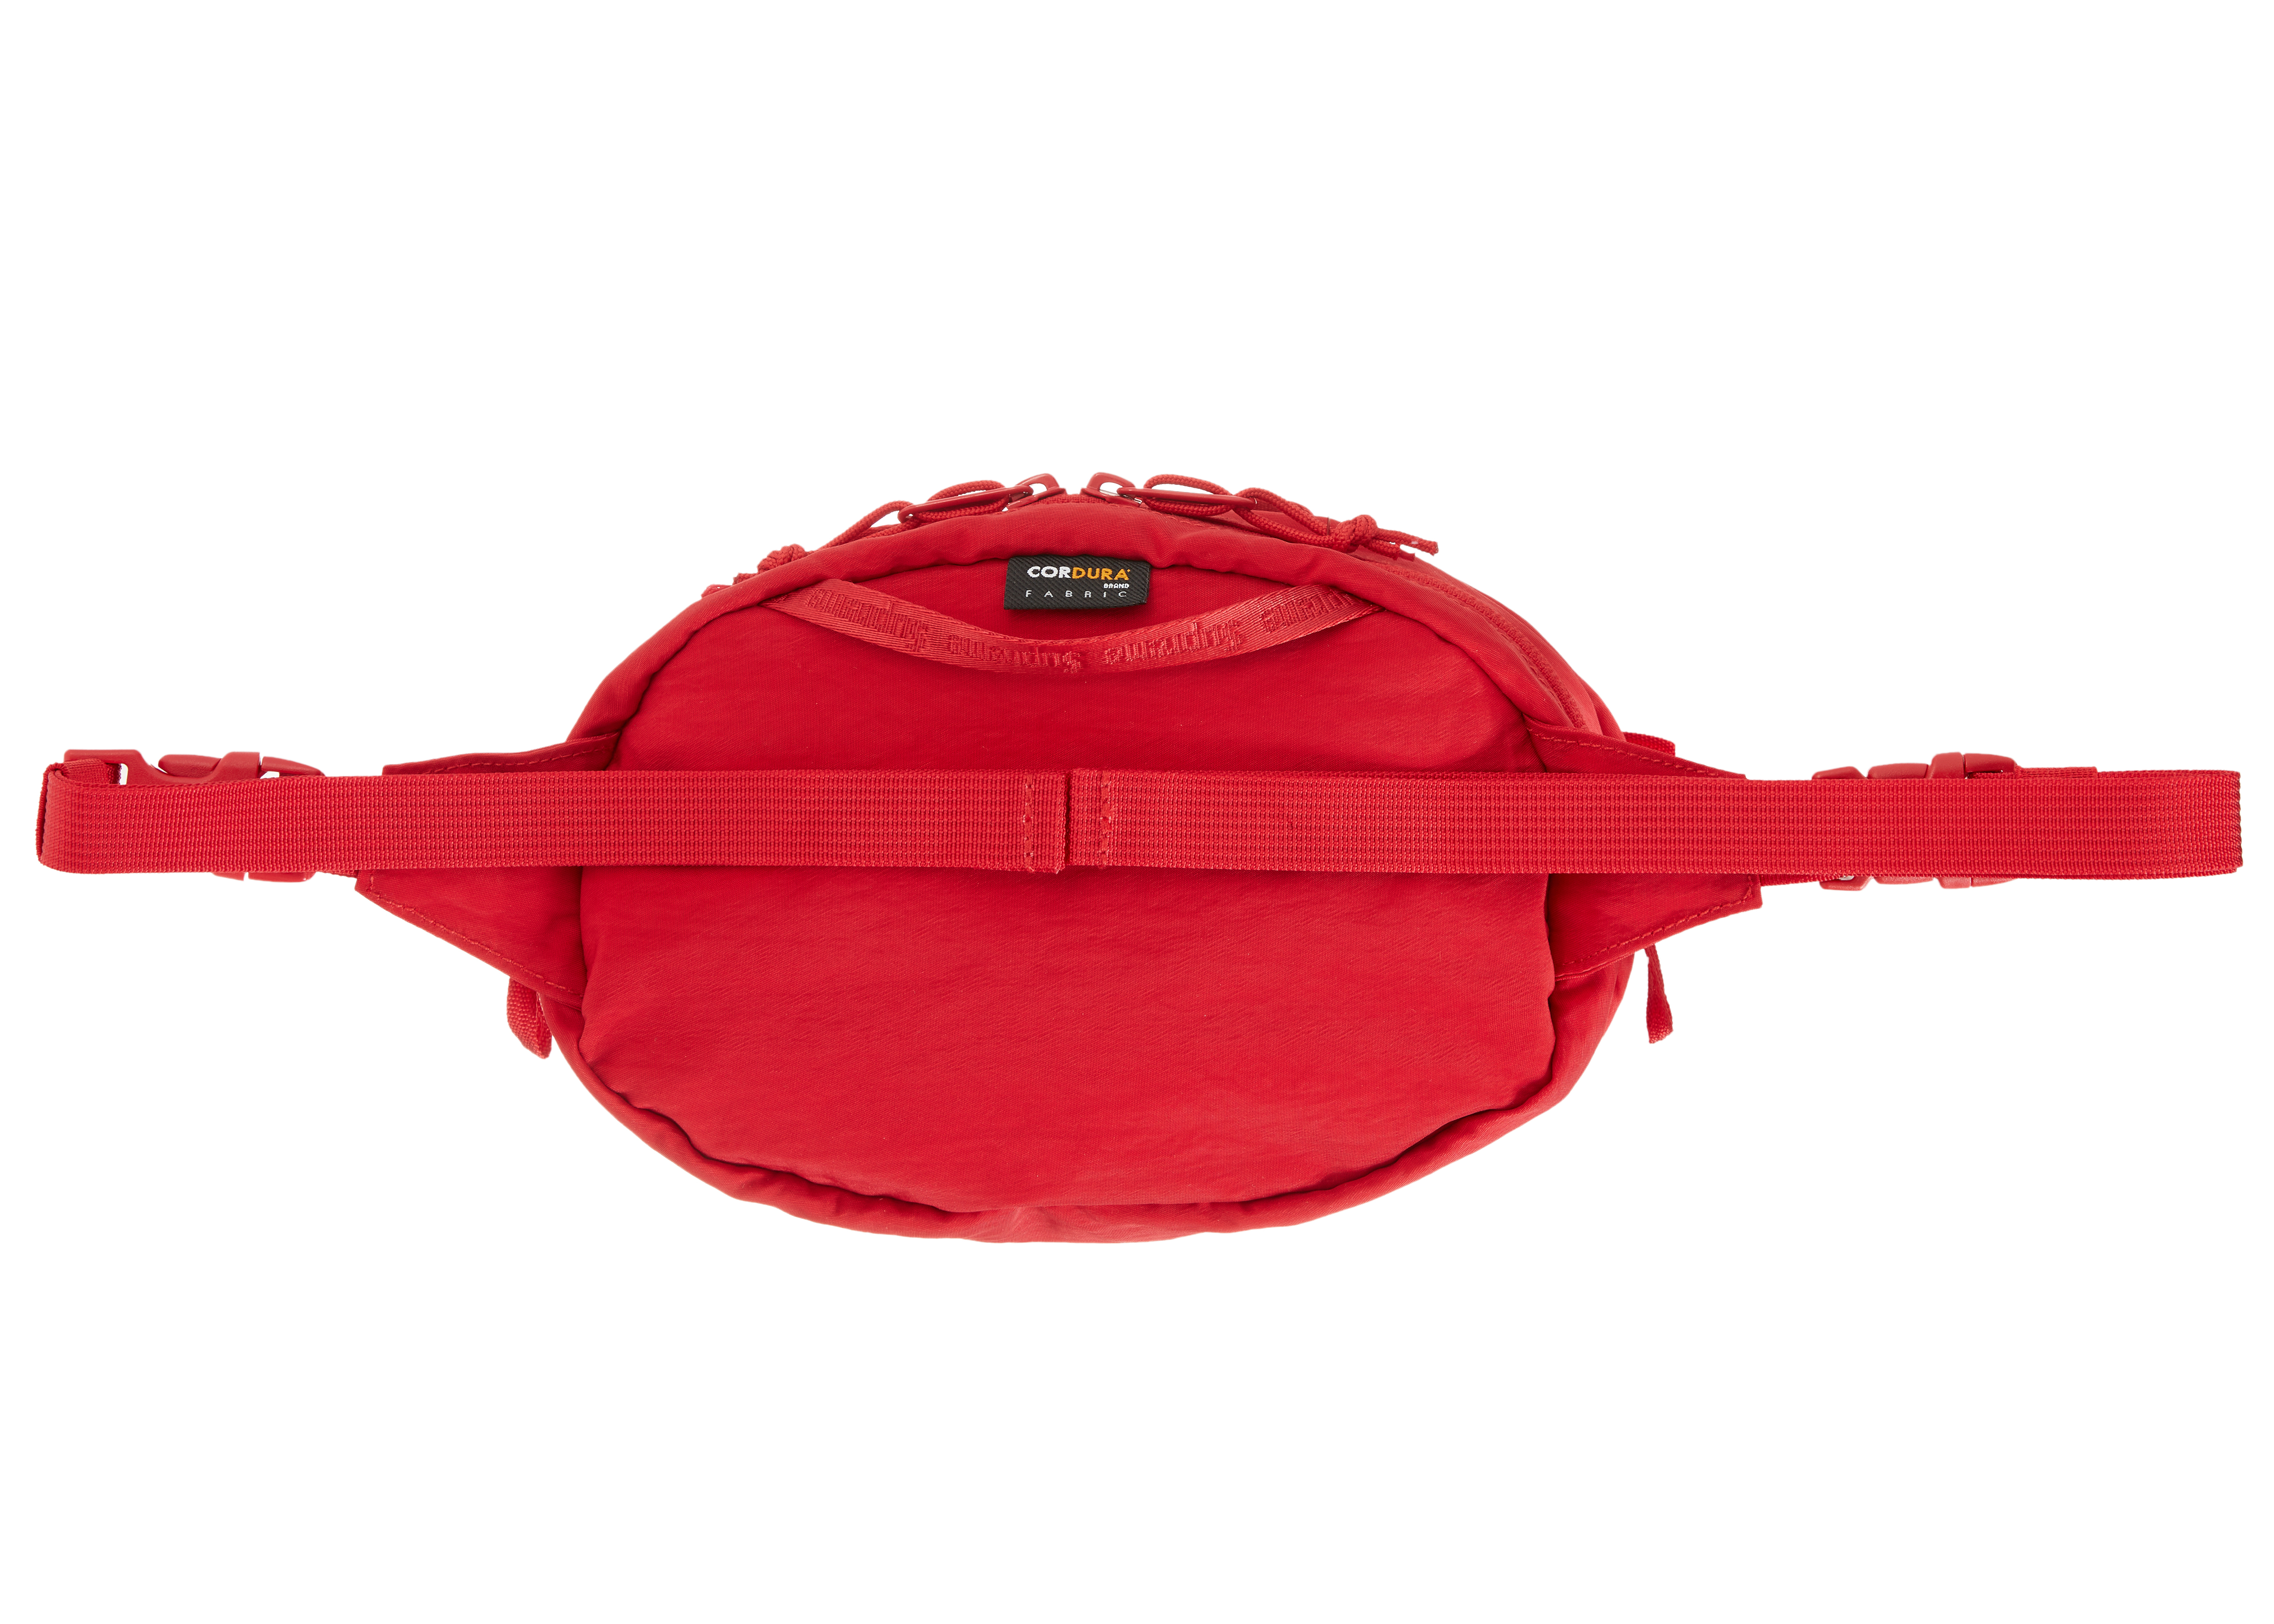 Supreme Waist Bag (FW20) Dark Red - FW20 - US